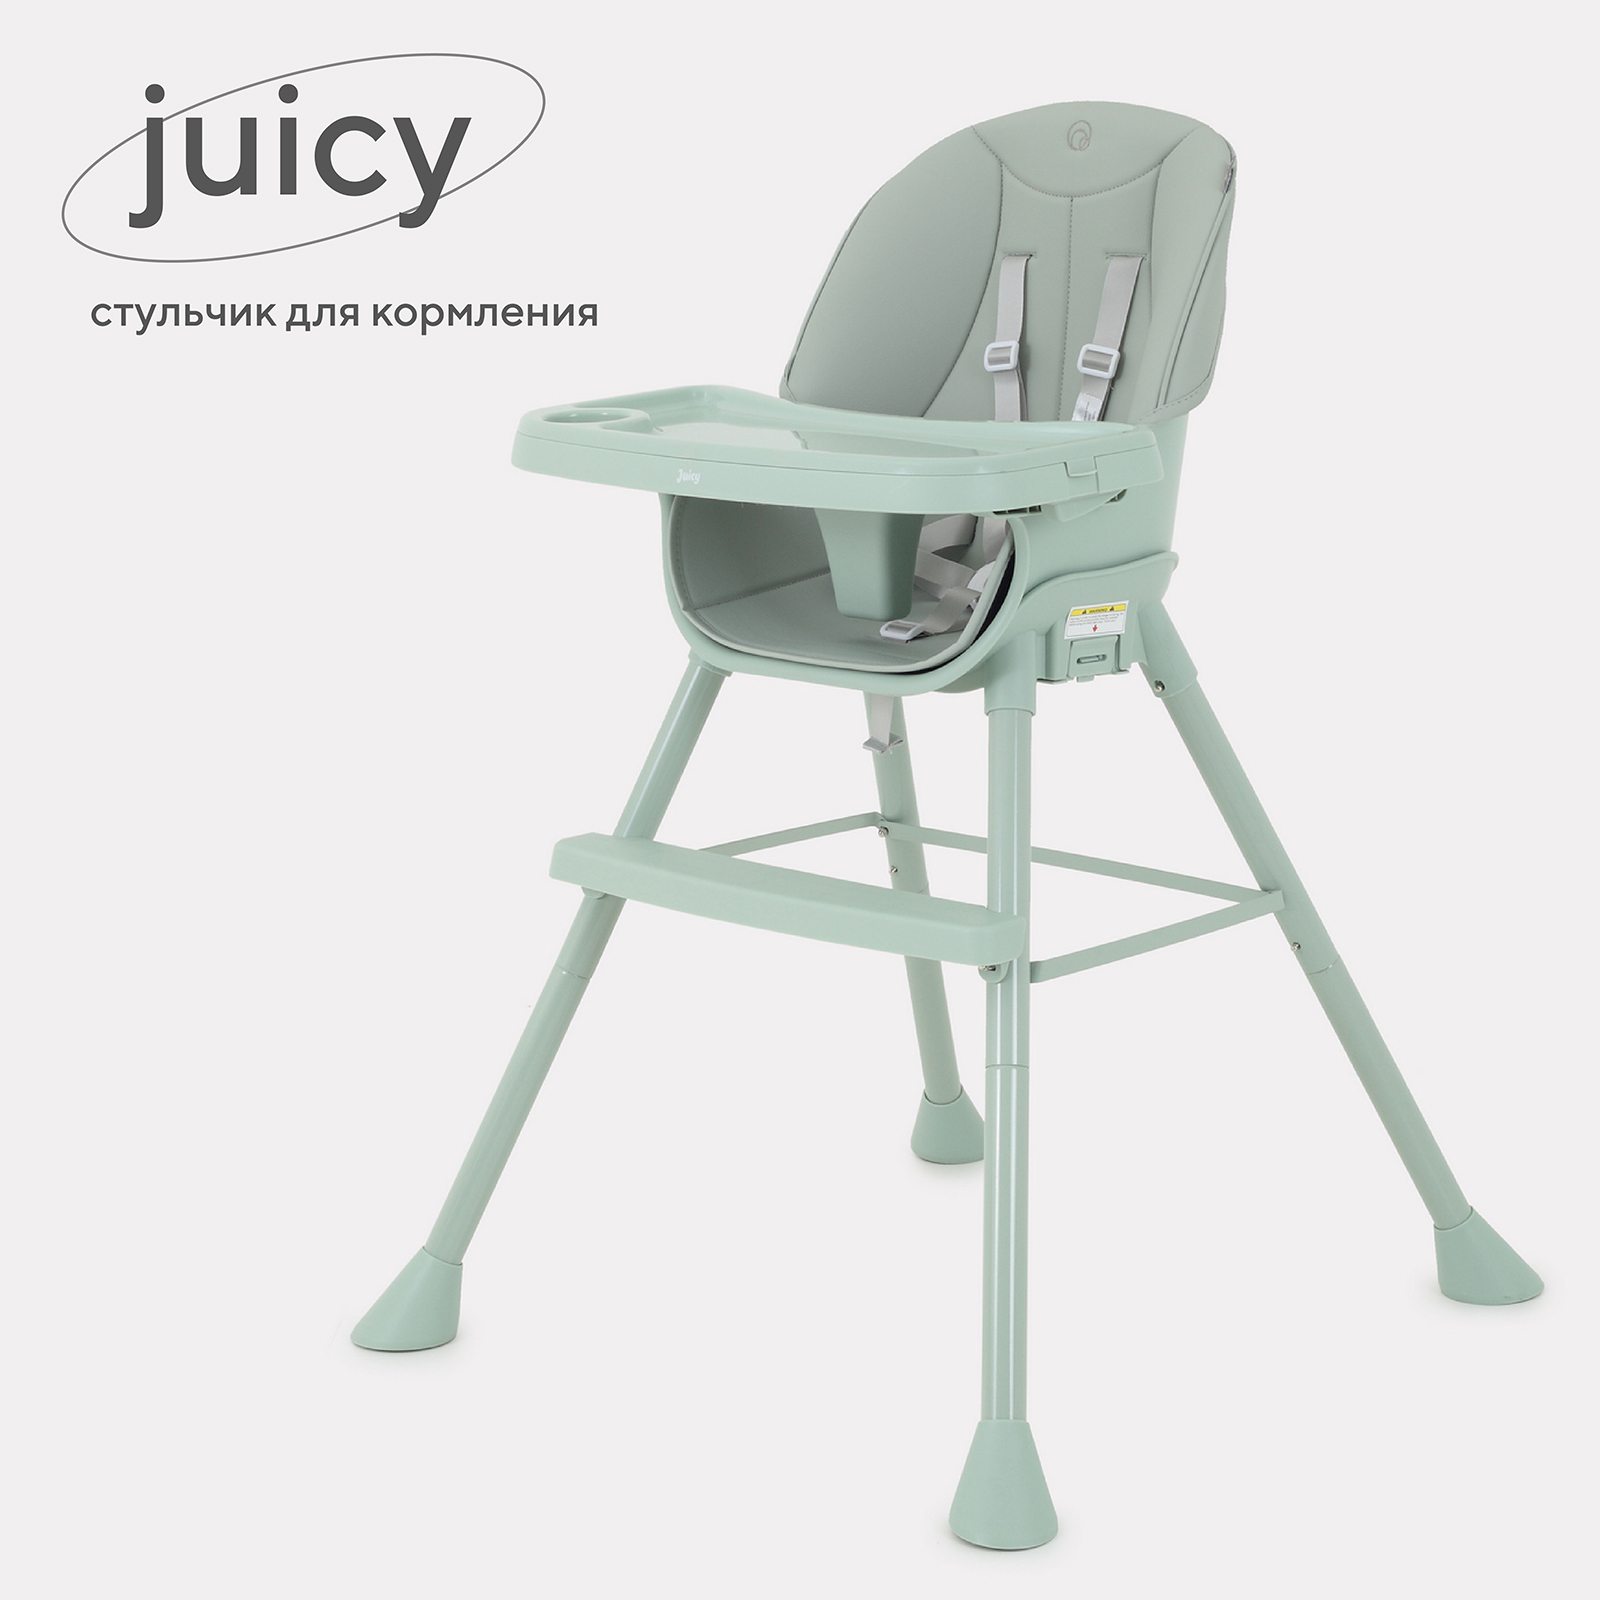 Стульчик для кормления RANT Juicy RH160 Ocean Green стульчик для кормления carrello crl 9502 3 toffee pale green